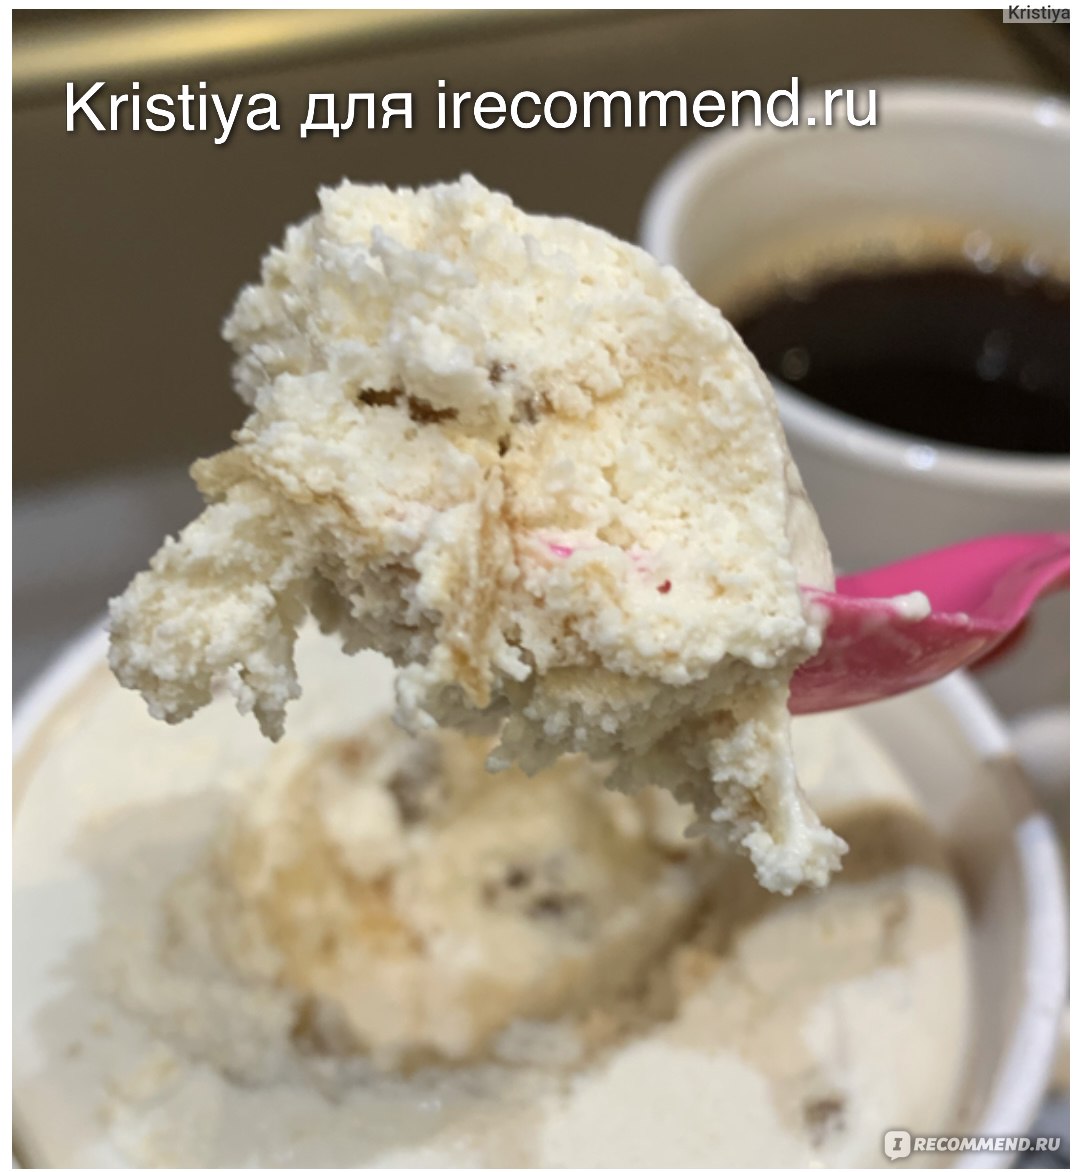 Мороженое MÖVENPICK Грeцкий орех с кленовым сиропом